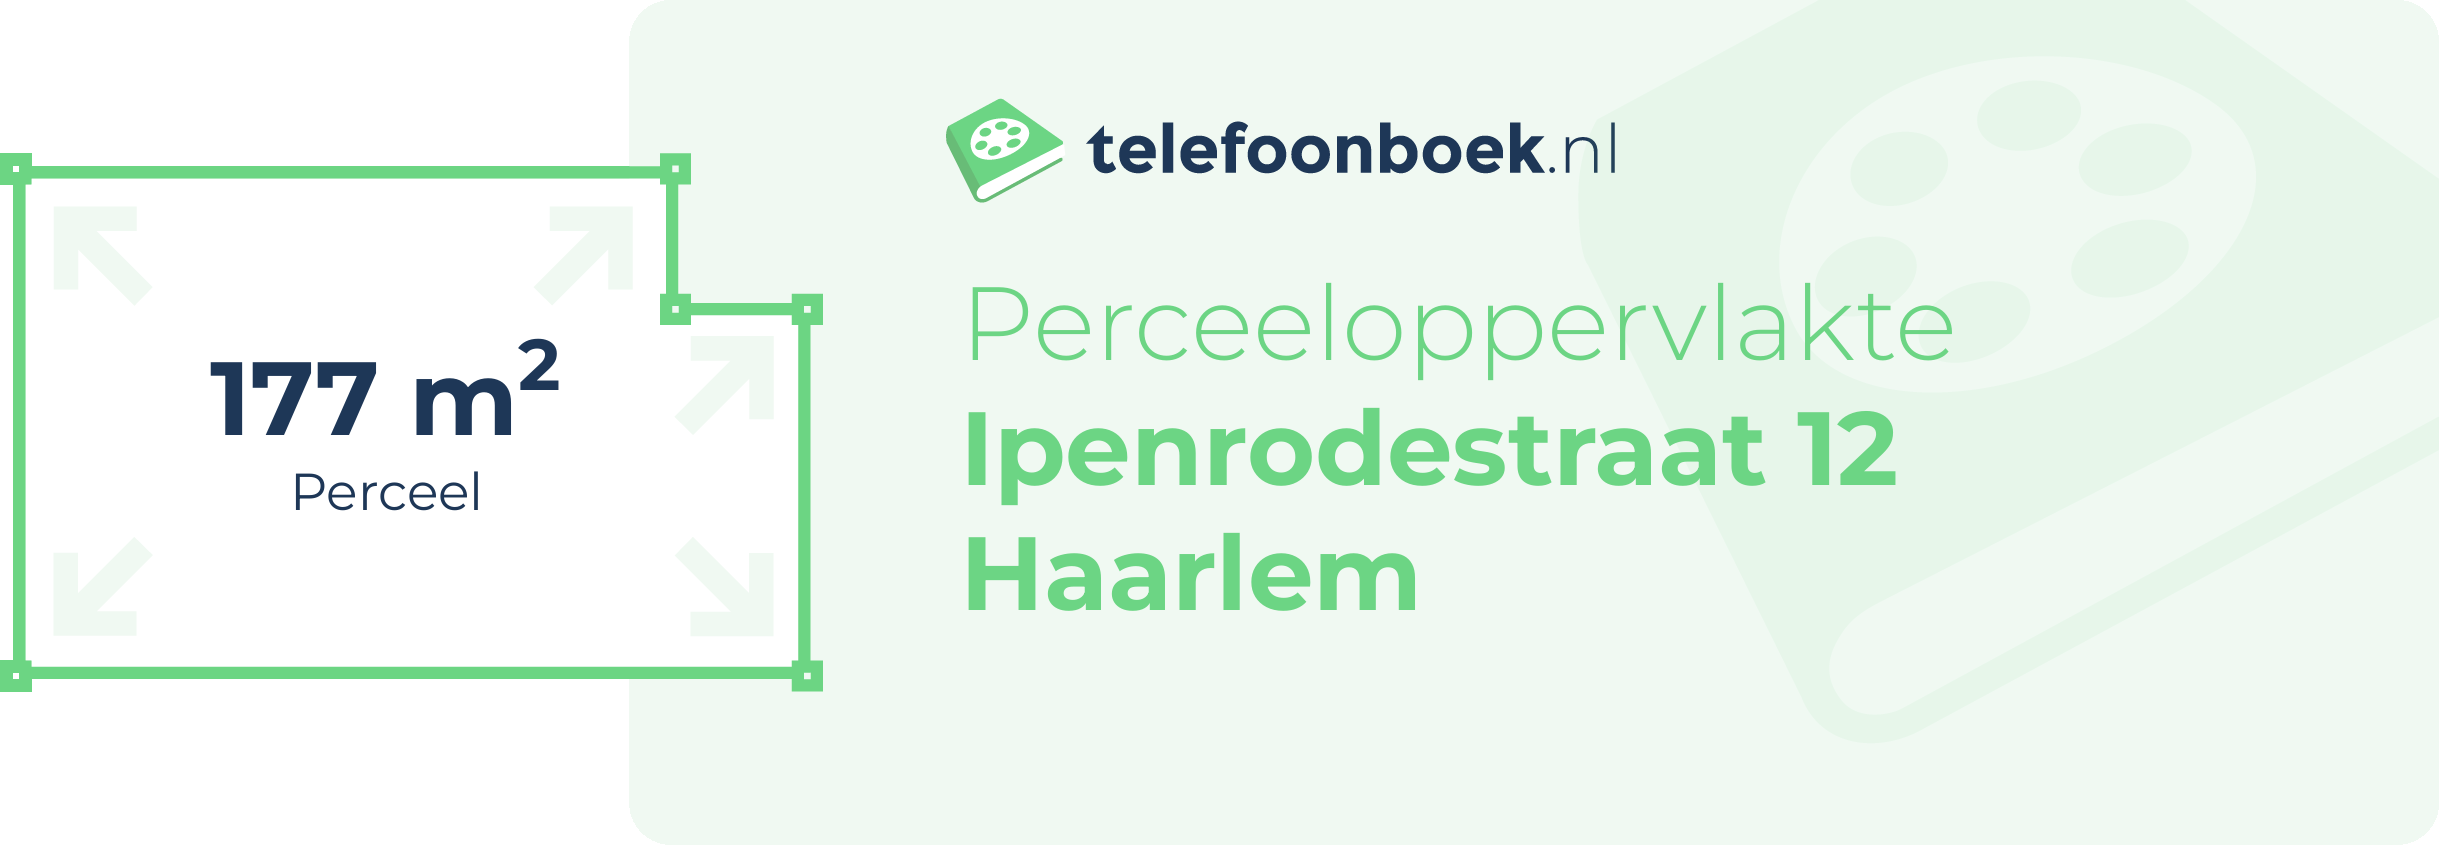 Perceeloppervlakte Ipenrodestraat 12 Haarlem